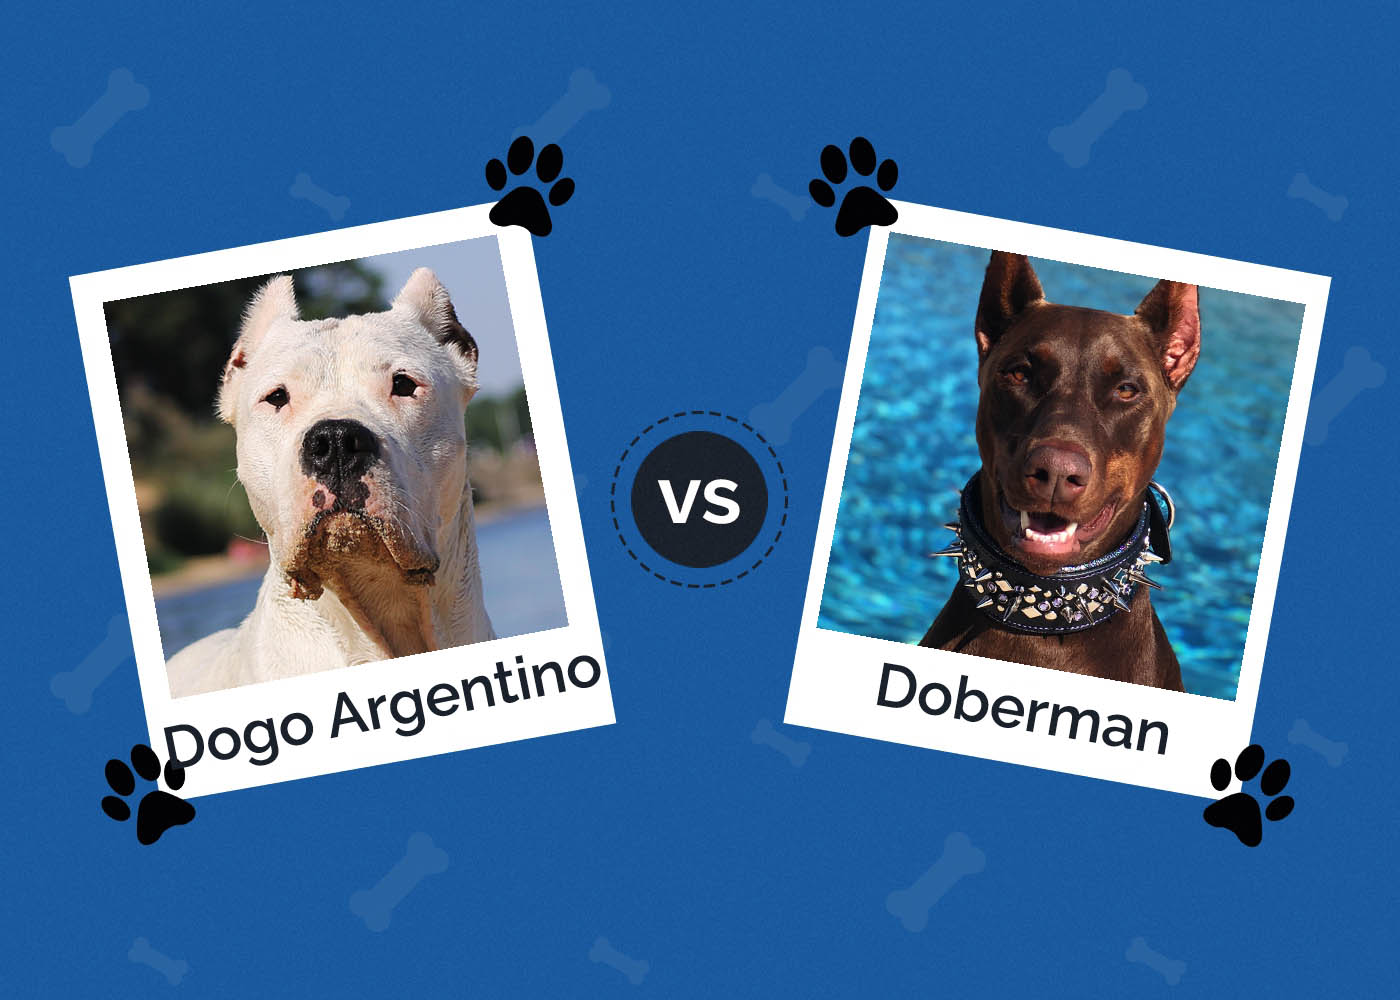 Dogo Argentino vs Doberman